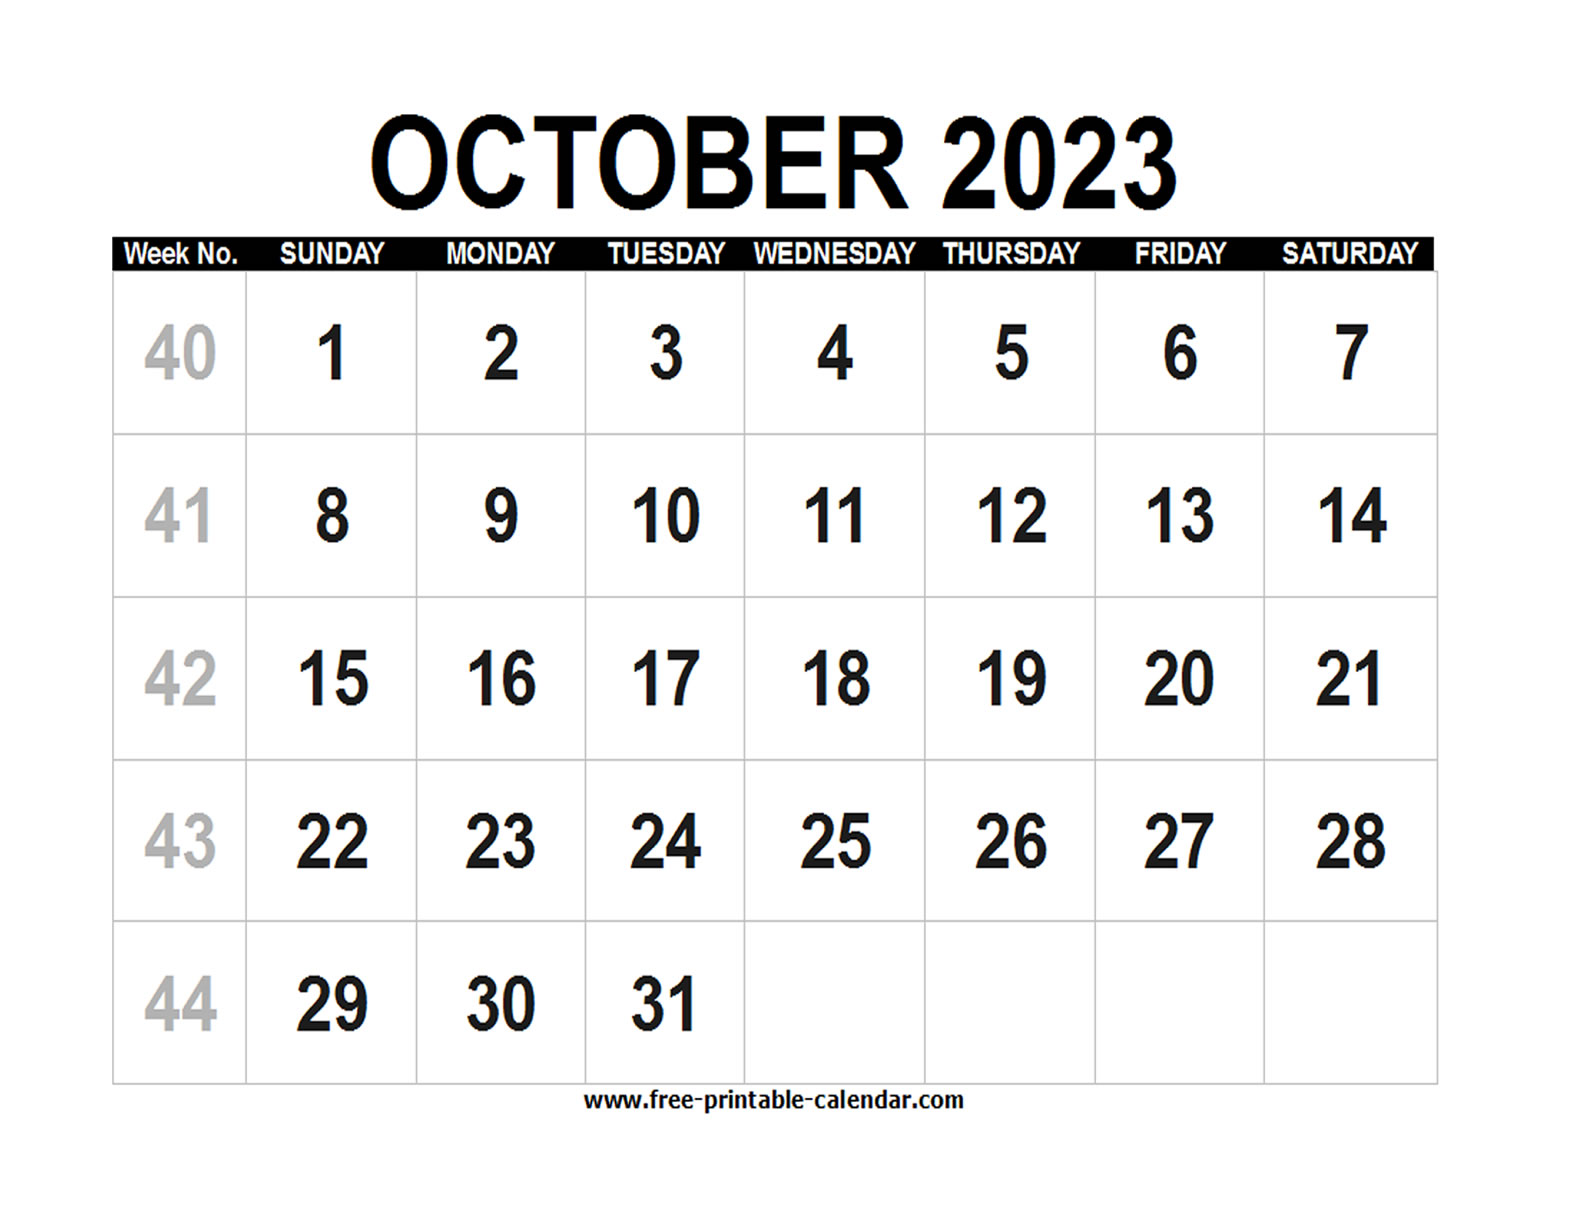 free-printable-2023-october-calendar-pelajaran